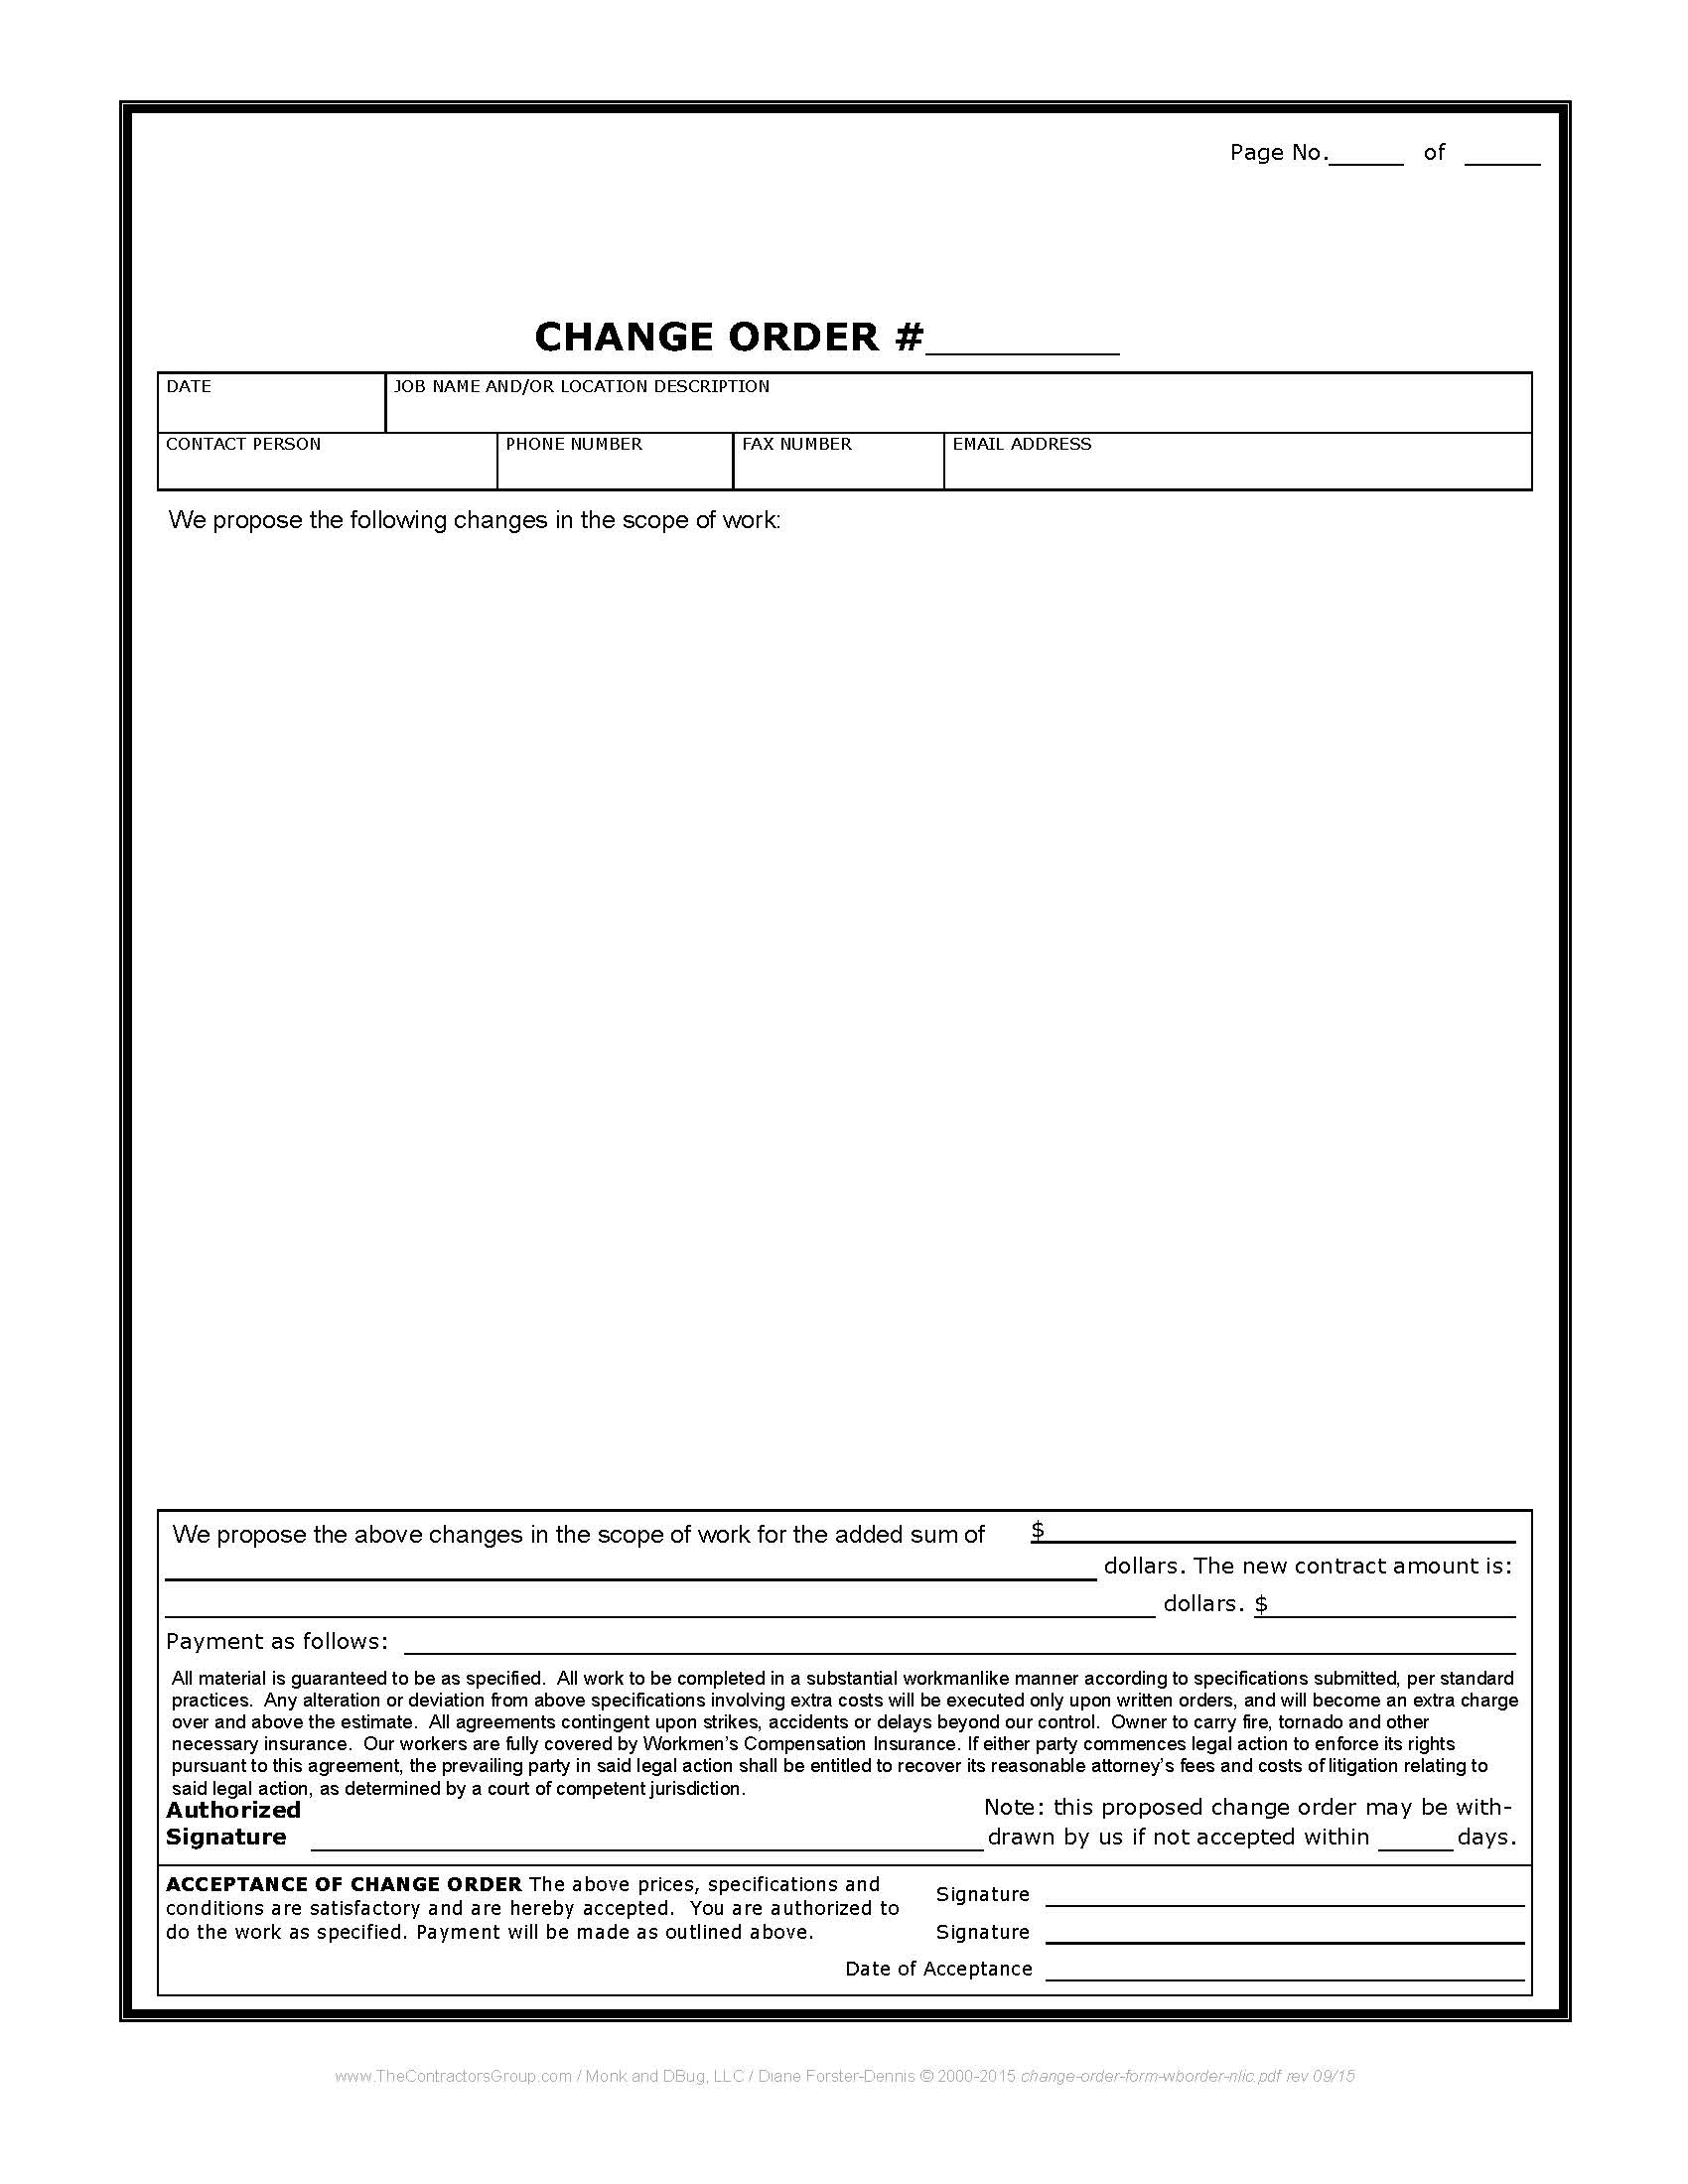 Image of Change Order Form